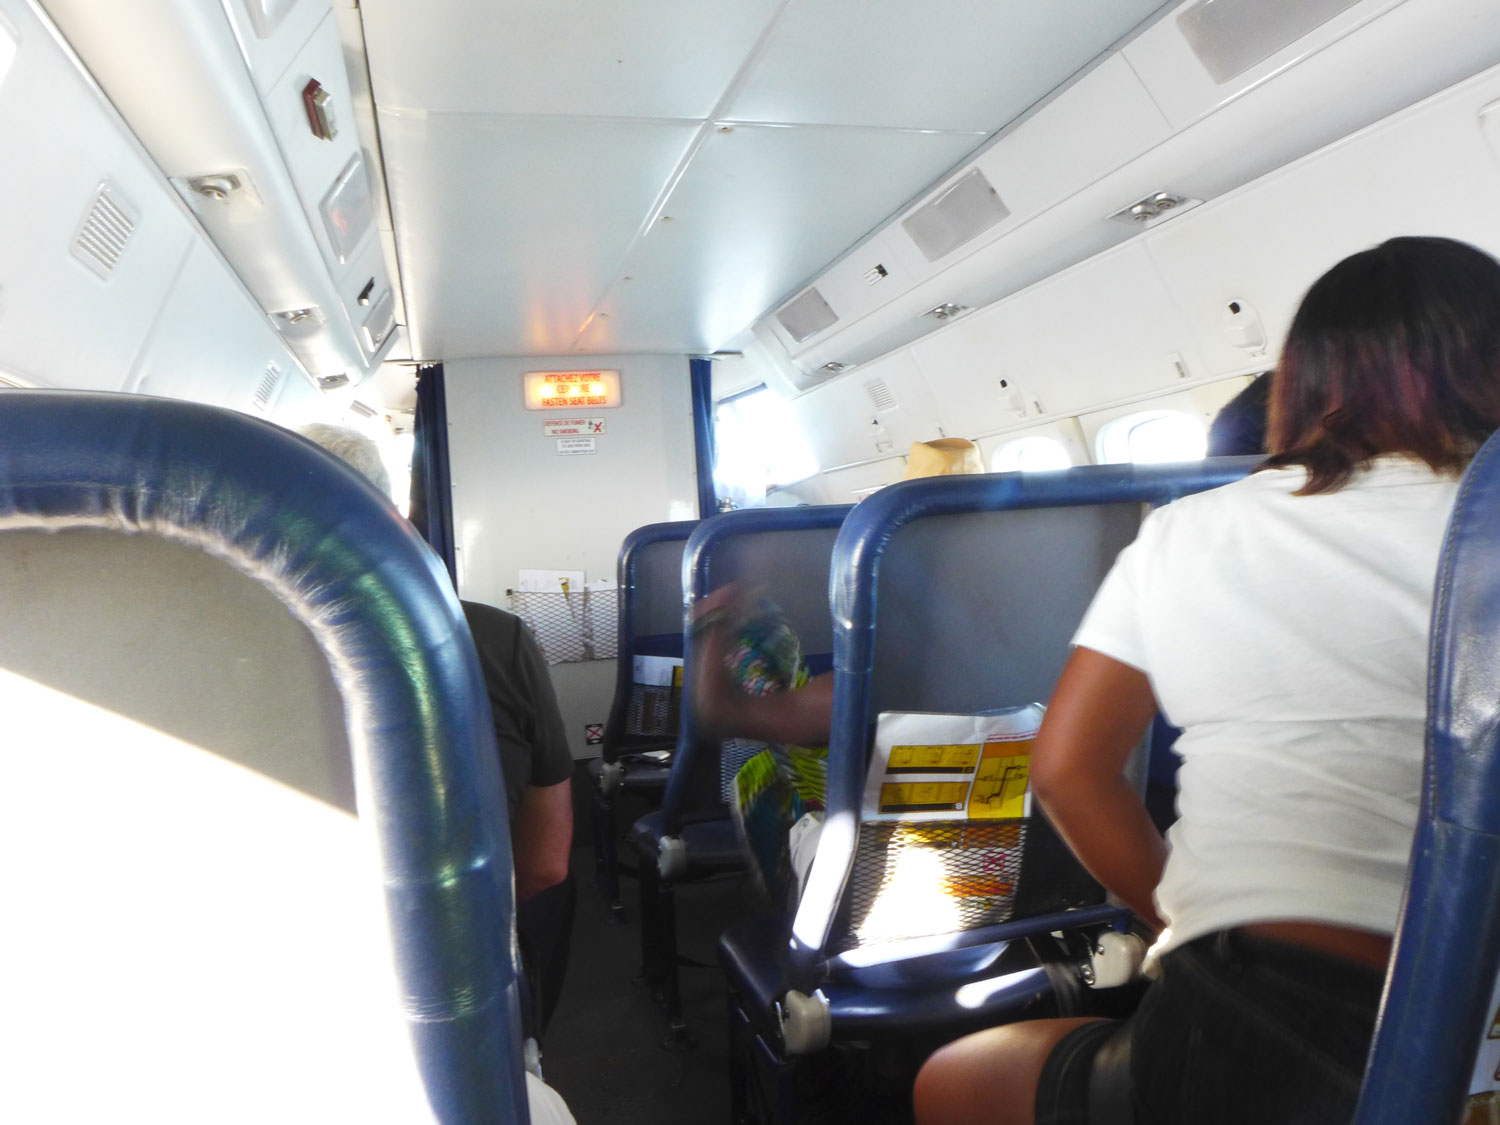 Avant de monter à bord de l’avion pour Maripasoula, certaines règles sont à respecter. Le poids des bagages est limité à 10 kilos, sinon il faut payer un supplément de 3 euros par kilo. Chaque passager est également pesé.